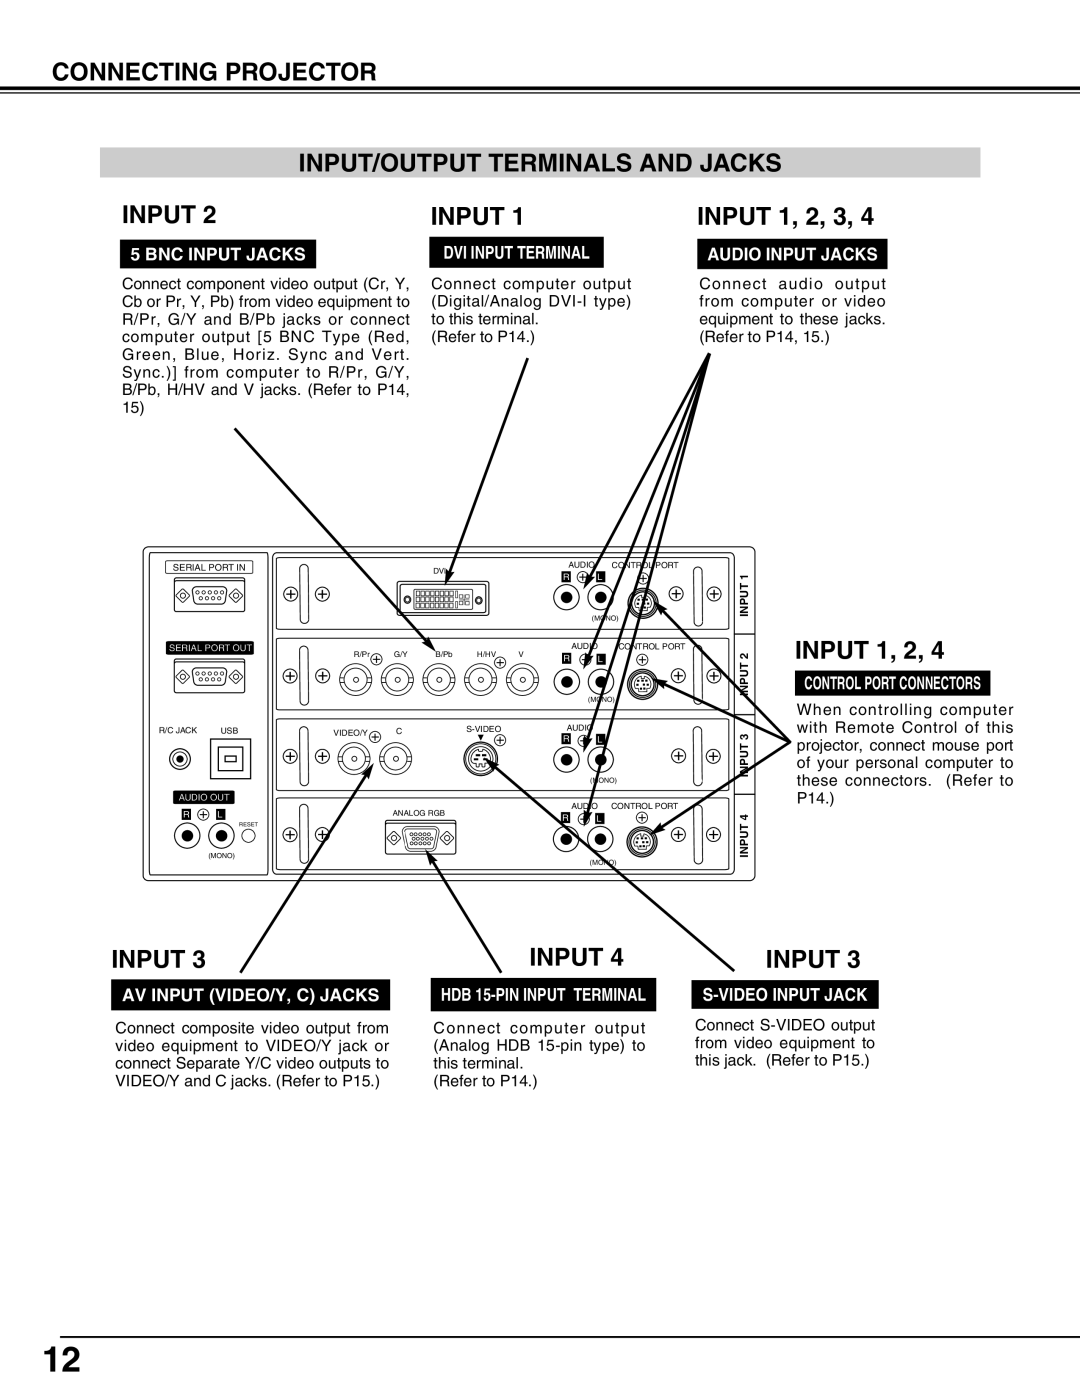 Eiki LC-UXT3 Input/Output Terminals And Jacks, INPUT 1, 2, 3, Connecting Projector, Bnc Input Jacks, Audio Input Jacks 